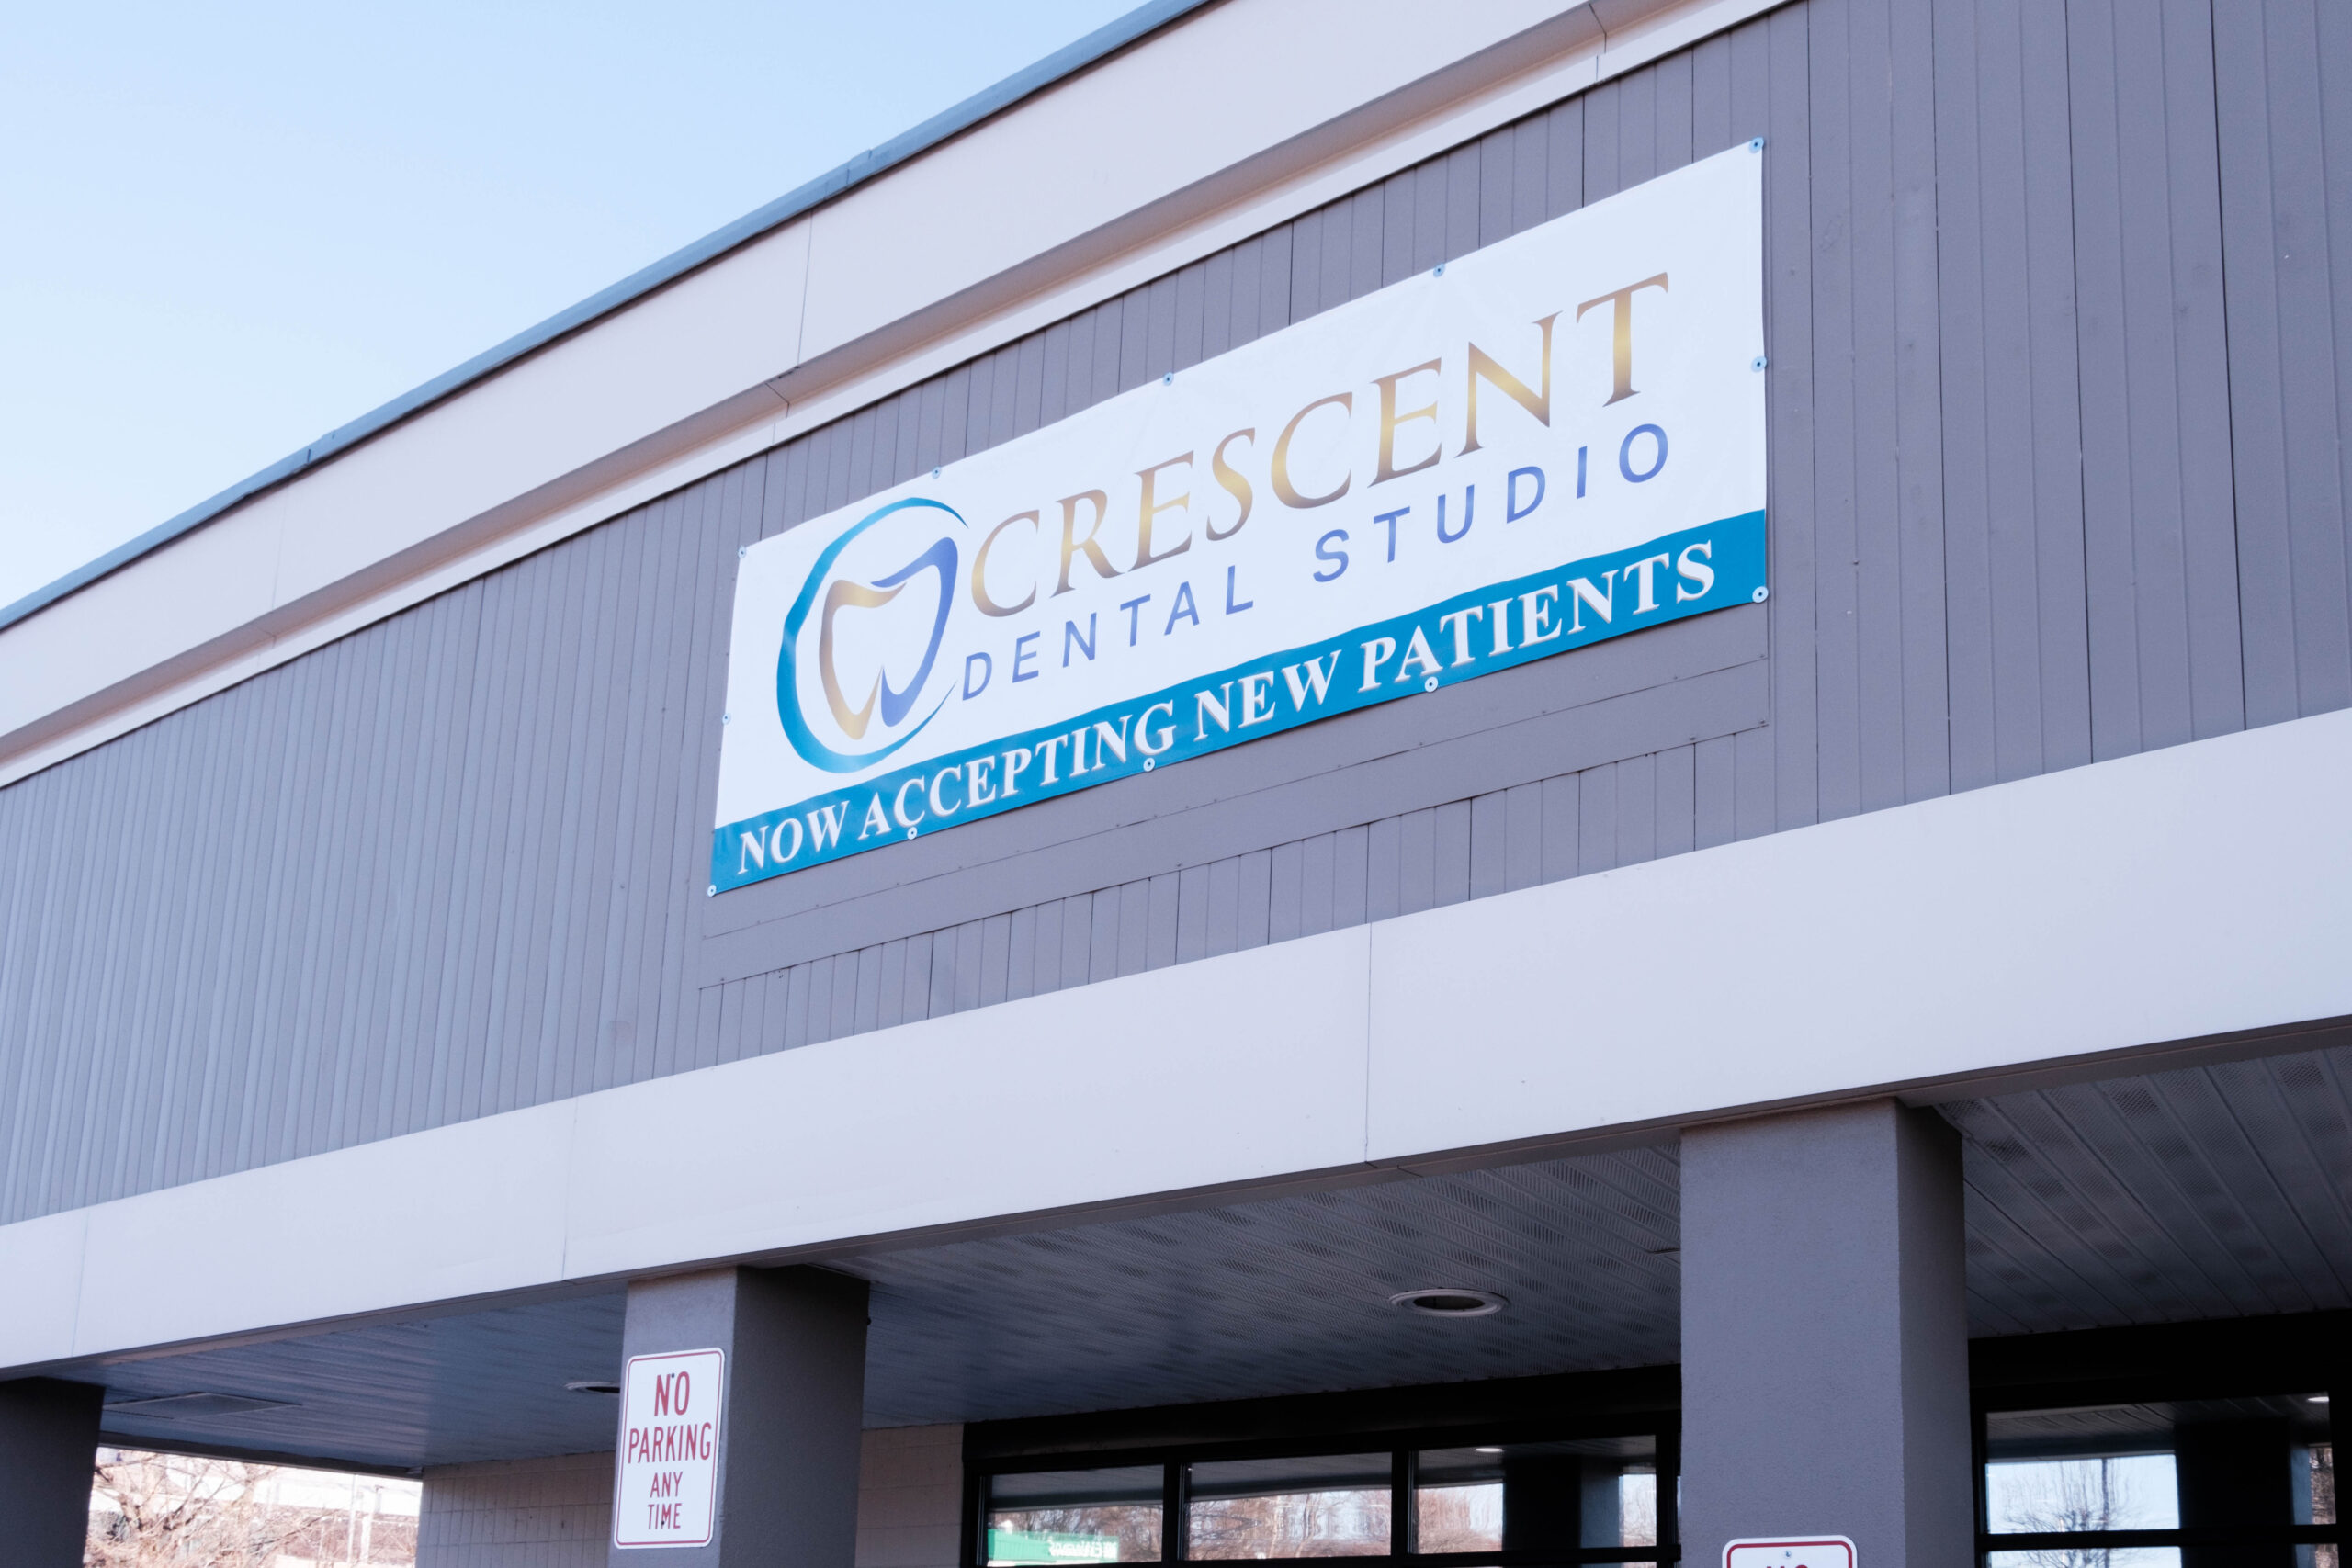 Crescent Dental Studio's outdoor sign